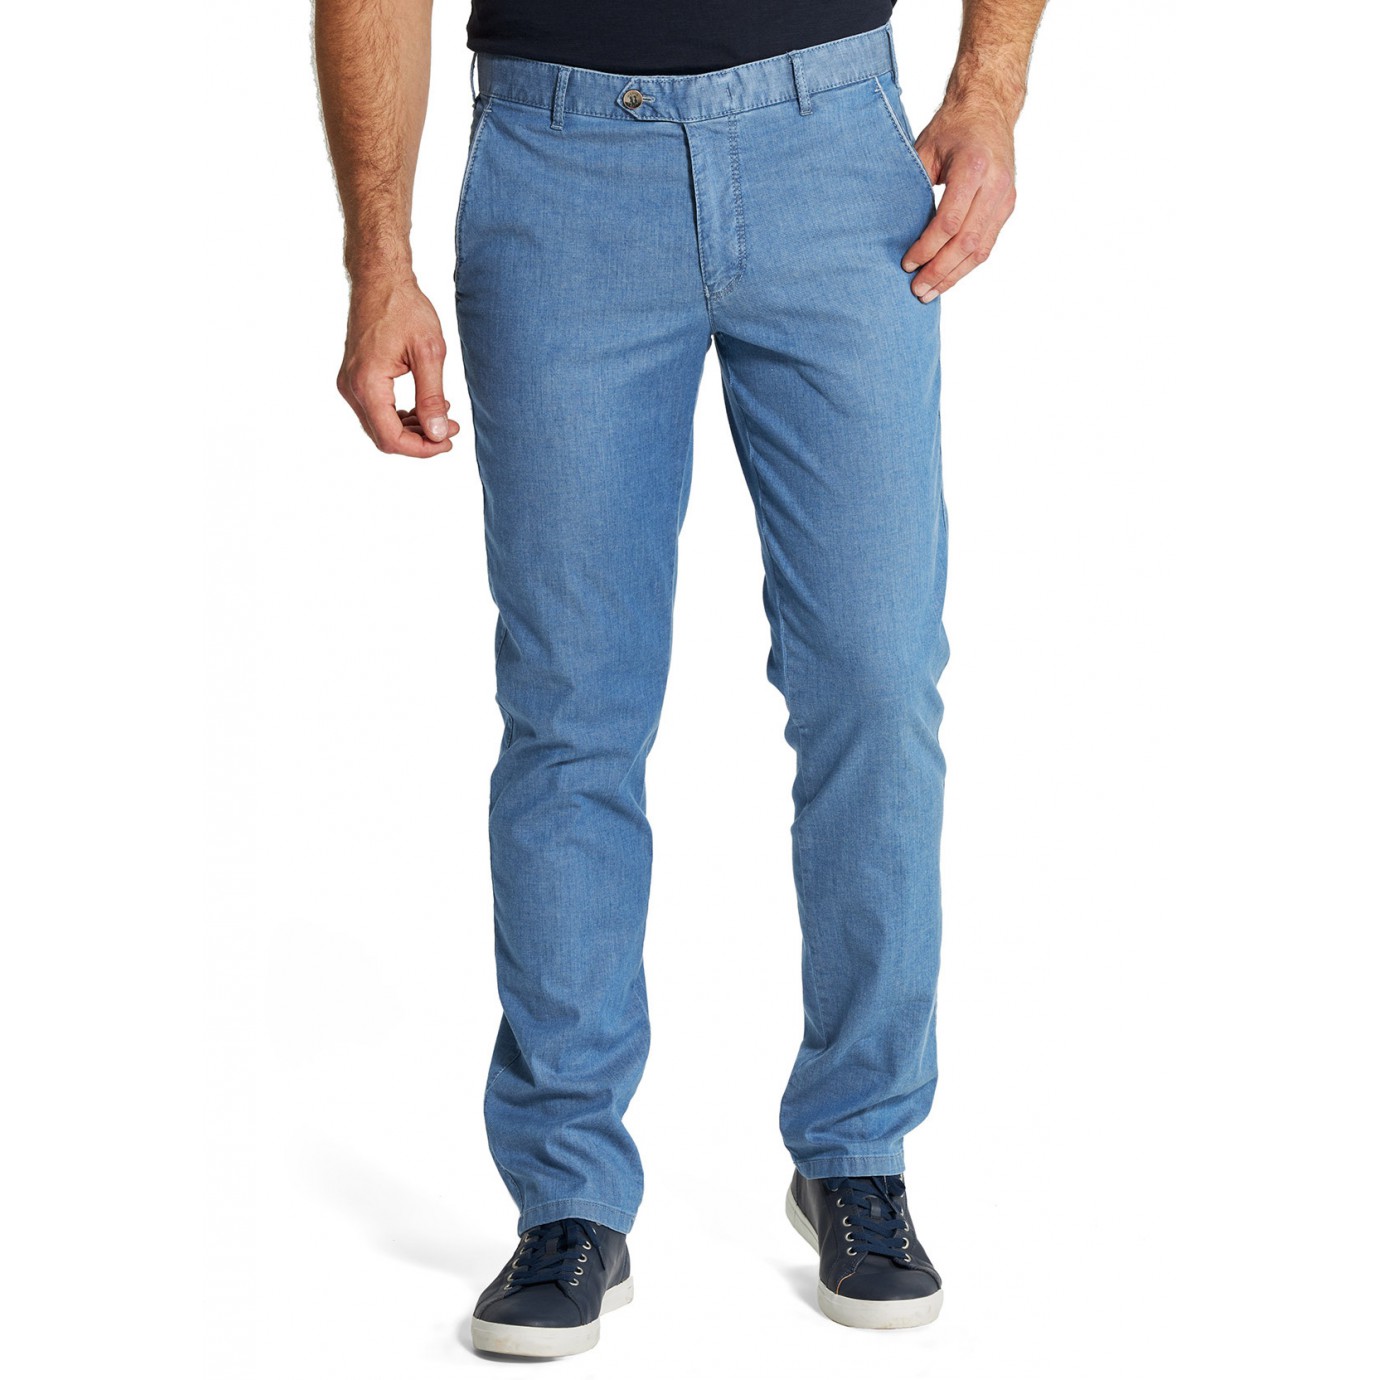 Брюки мужские Meyer Bonn 5-685/16 из легкой летней джинсовой ткани голубогоцвета купить в Москве в интернет-магазине SHOP4BIG - цена, фото, описание